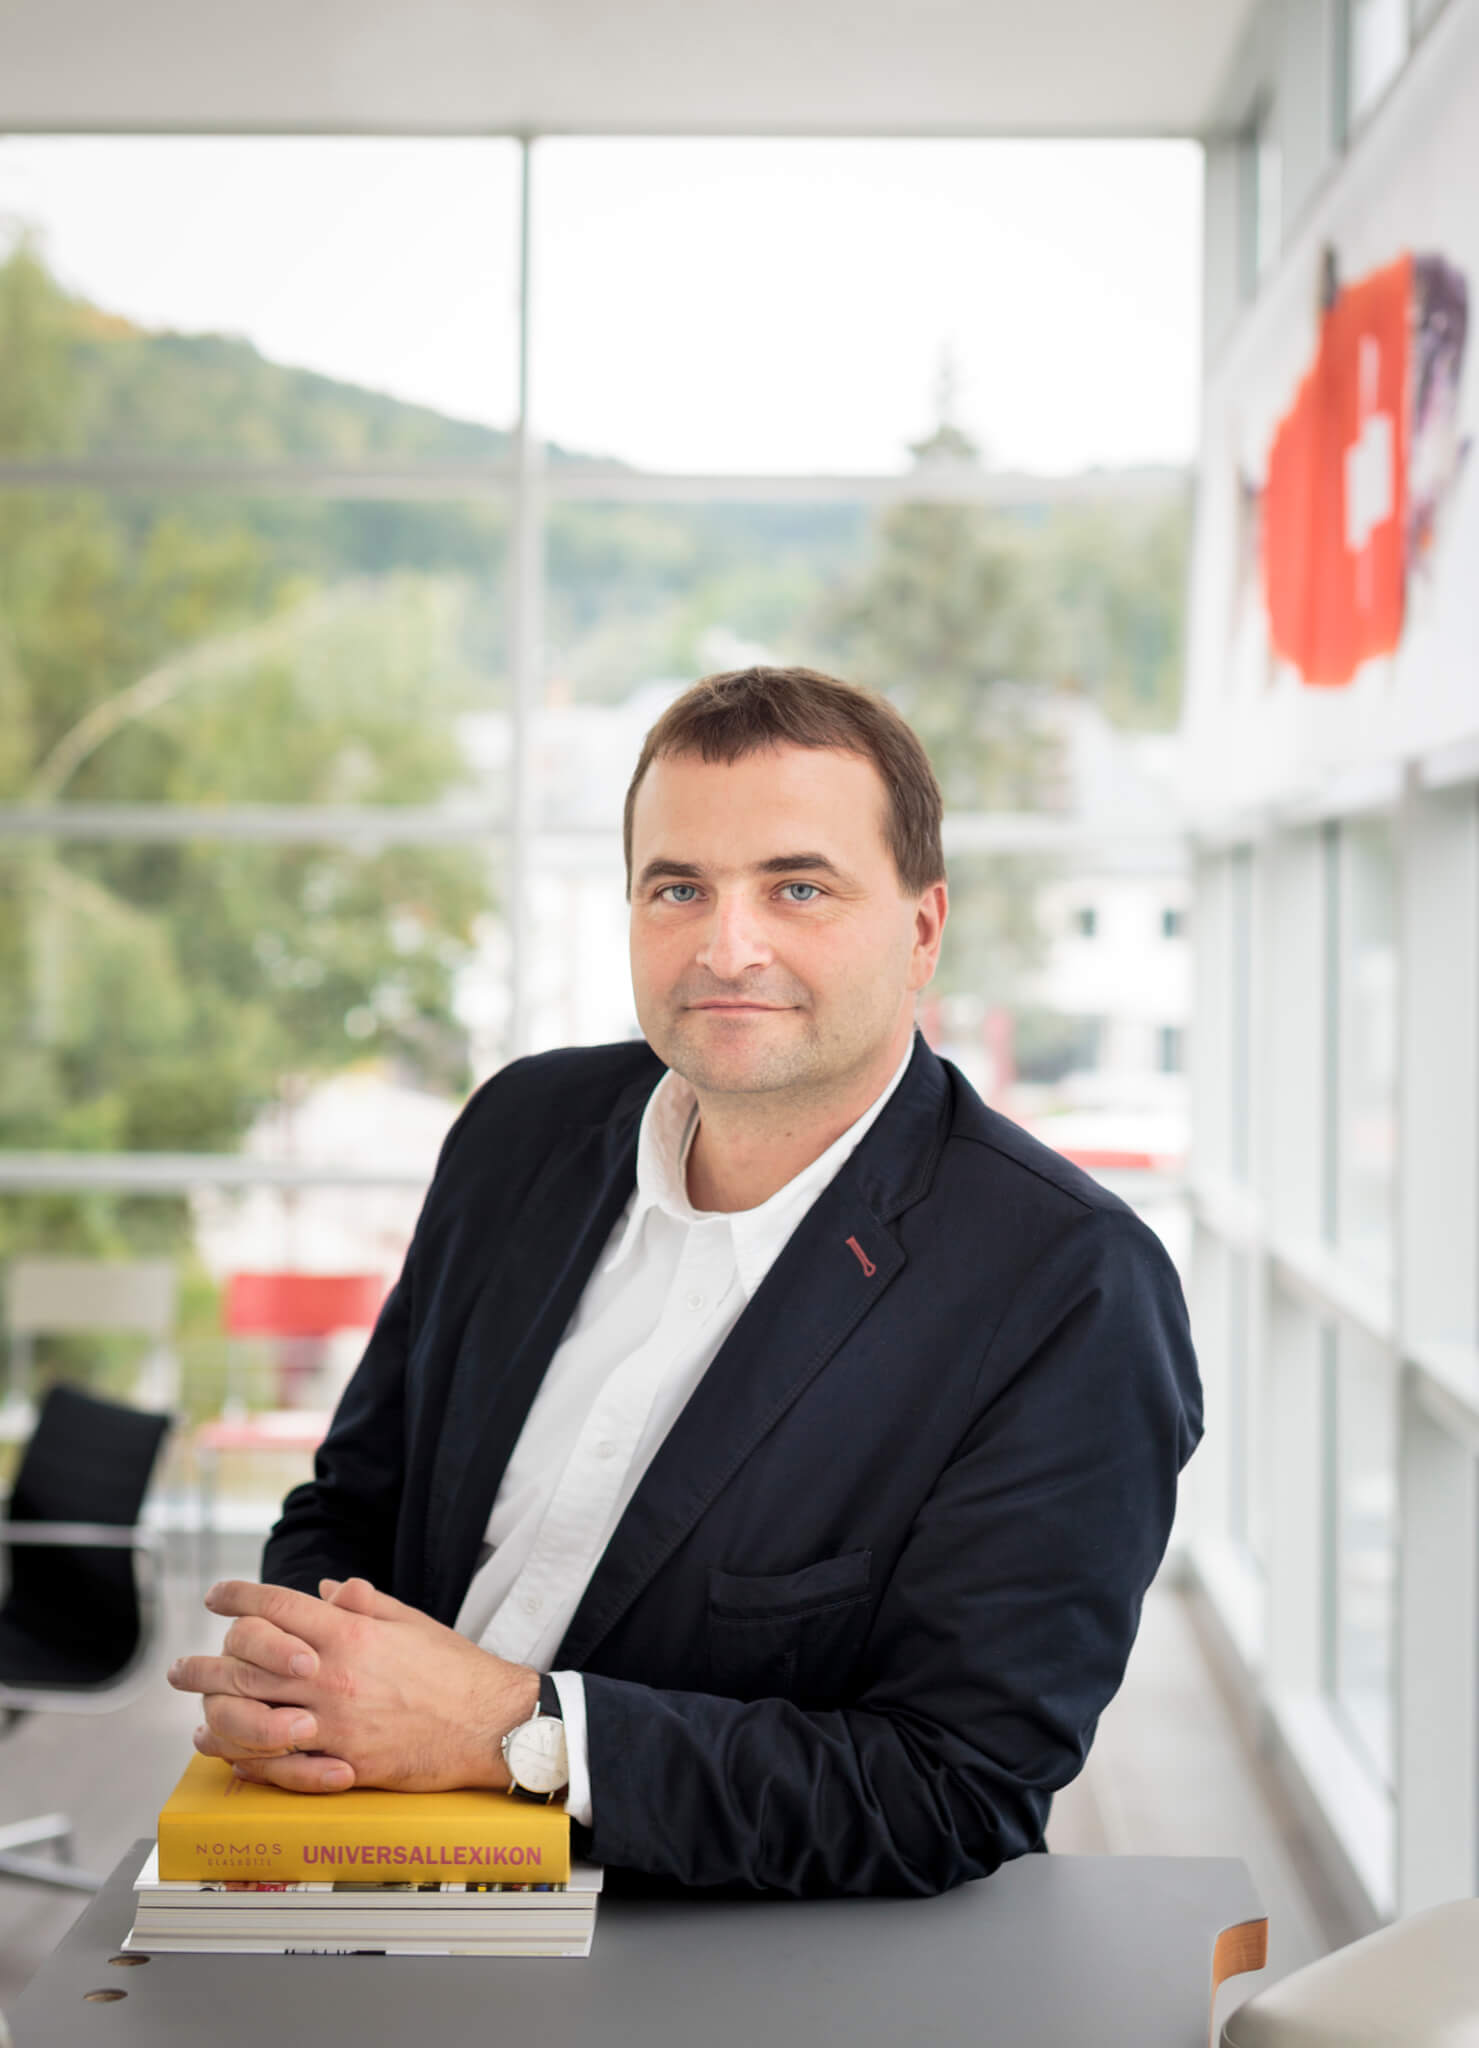 Uwe Ahrendt, managing director and part owner of Nomos Glashütte